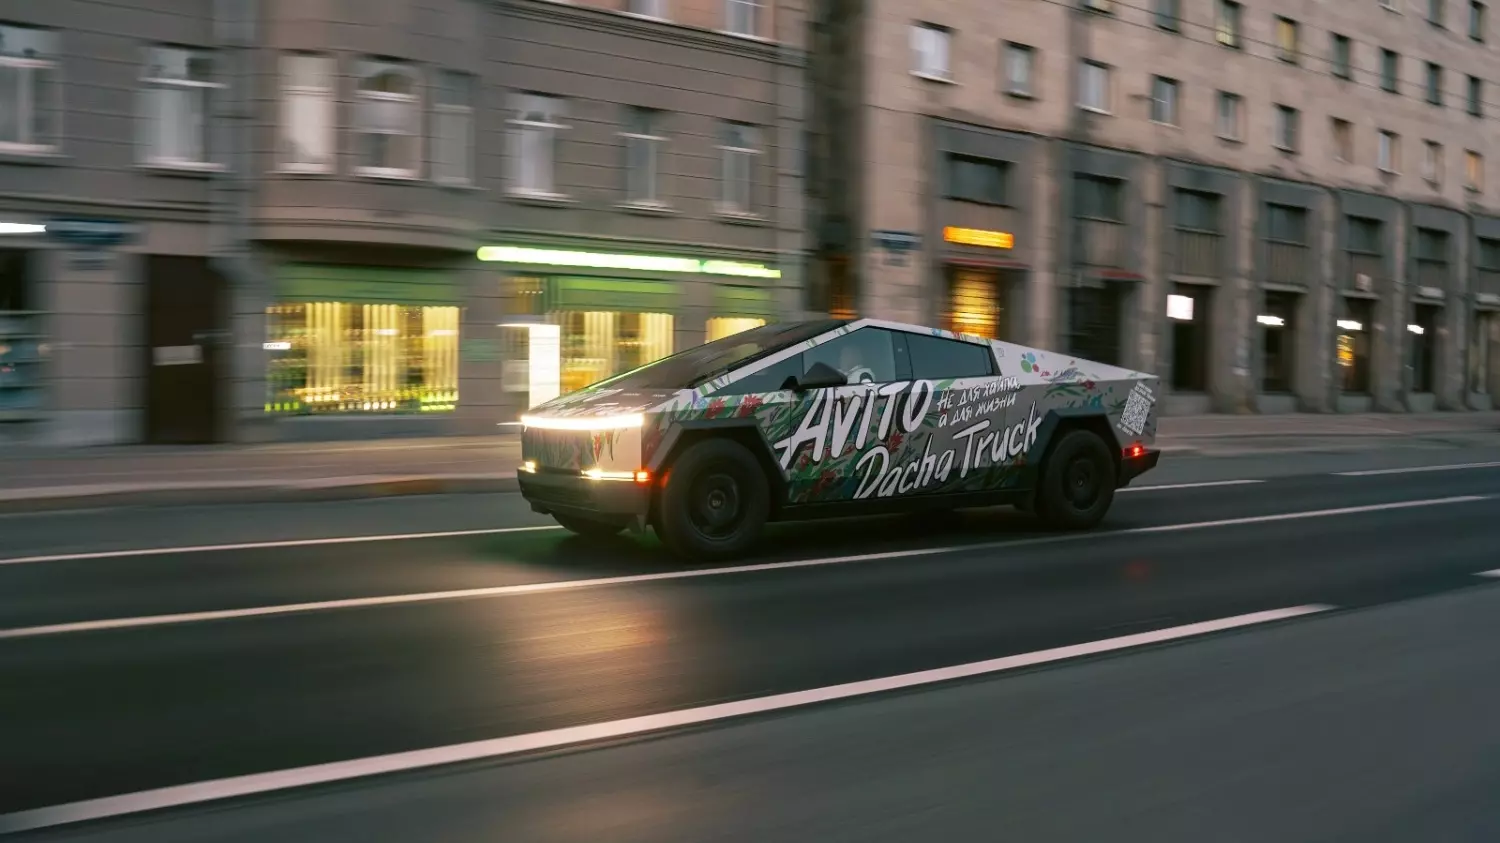 Дачный вариант Tesla Cybertruck появился на улицах Петербурга7